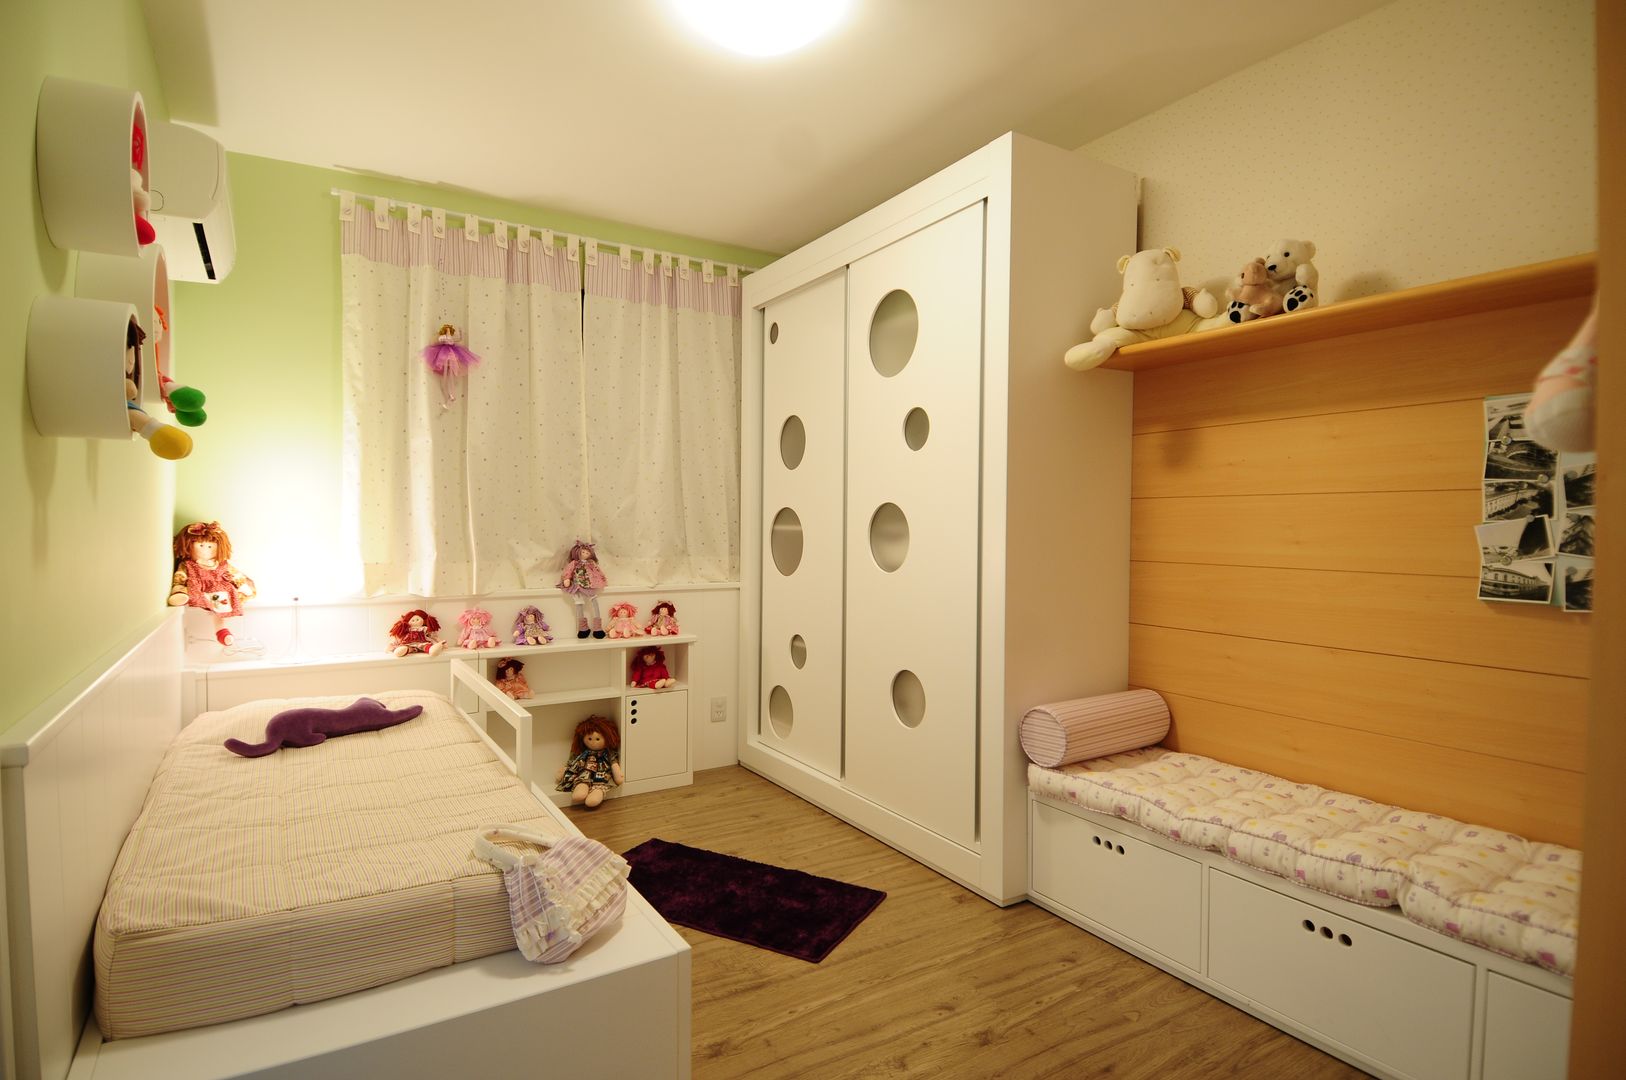 Apartamento Rio Branco., João Linck | Arquitetura João Linck | Arquitetura Dormitorios infantiles modernos: